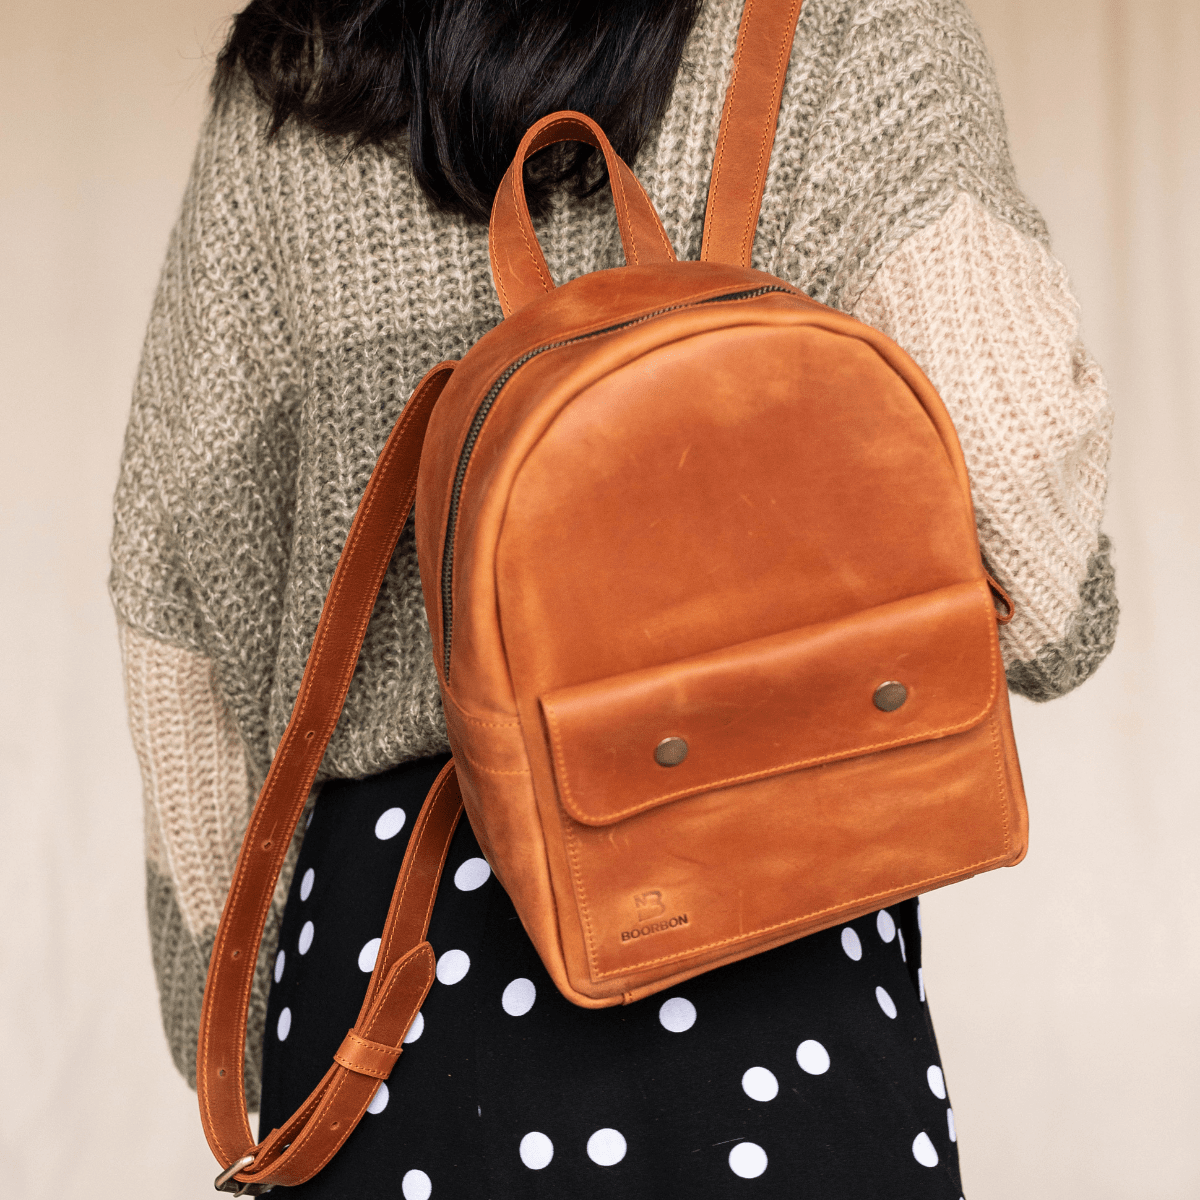 Стильный женский мини-рюкзак ручной работы арт. 519 коньячного цвета из .